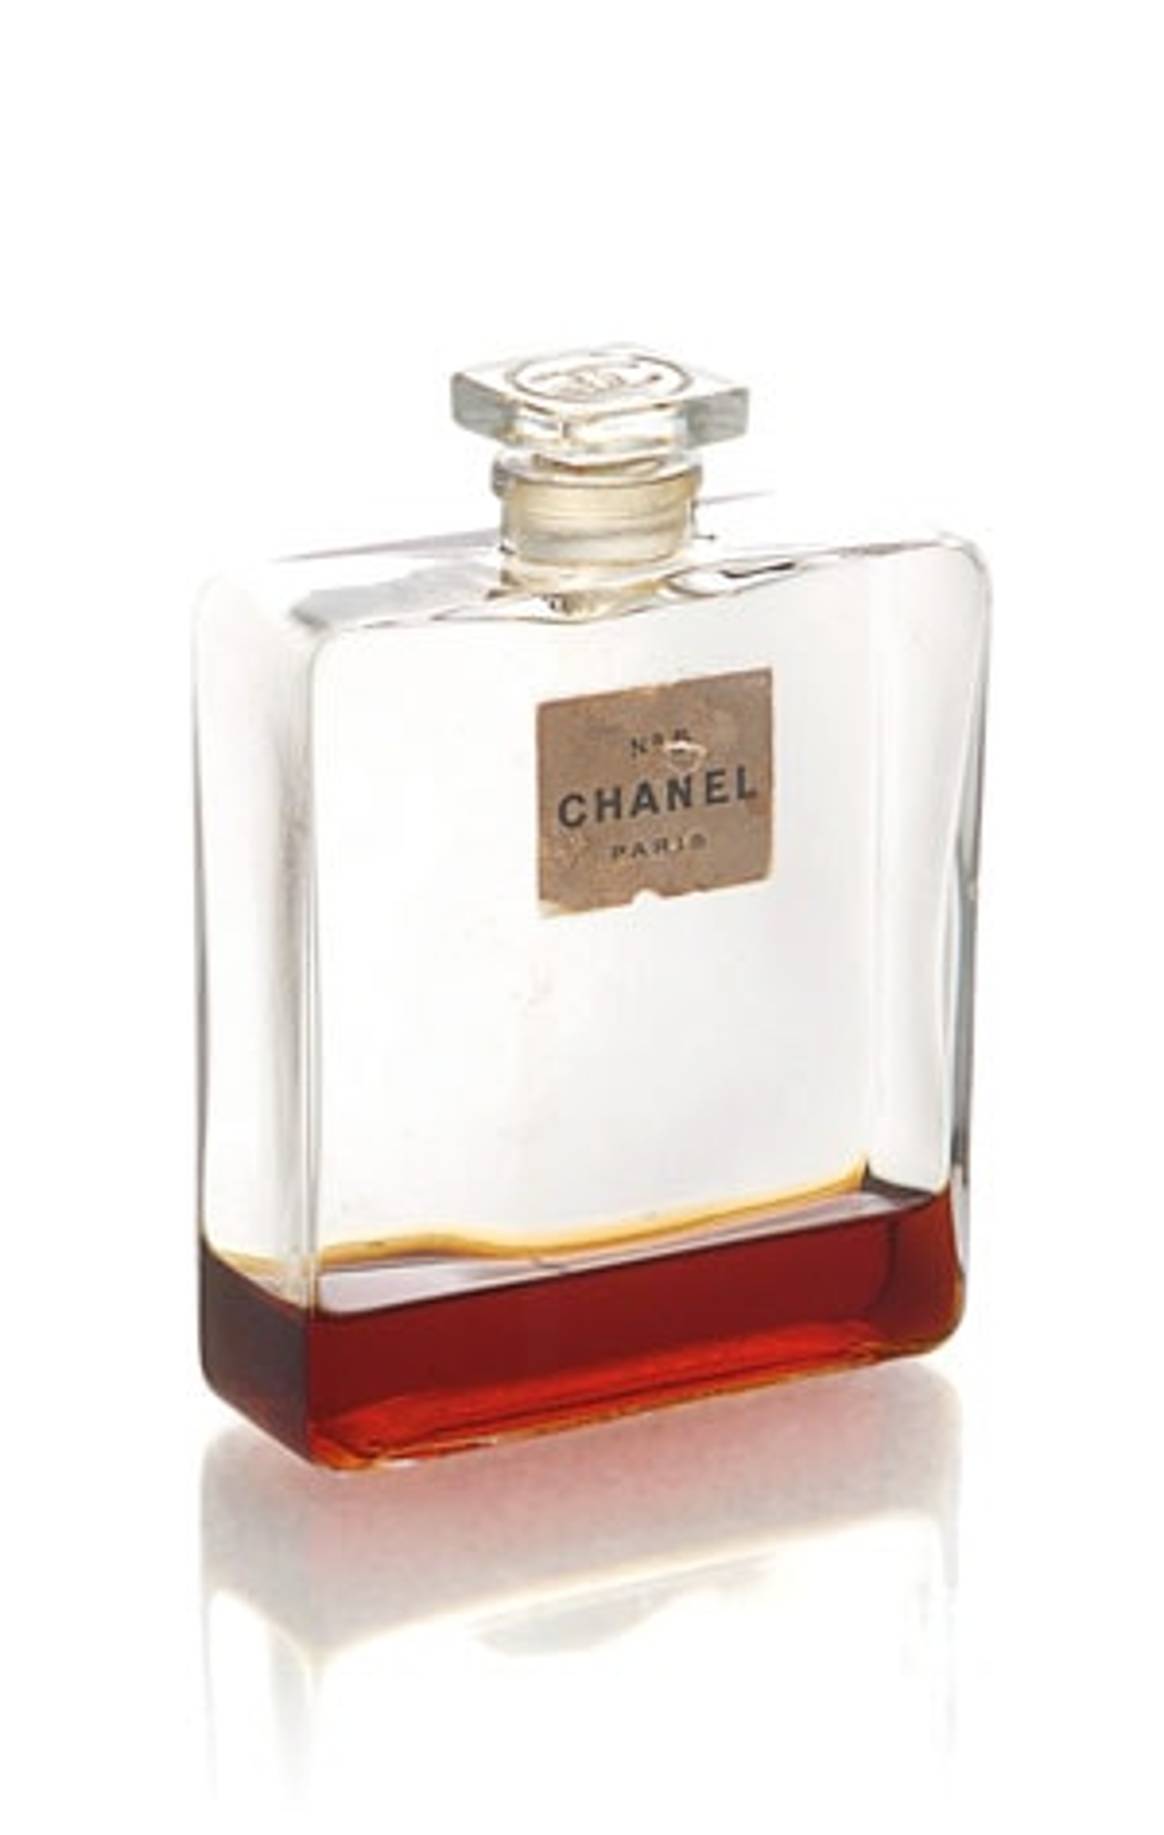 Het leven van Chanel door haar mantelpakjes